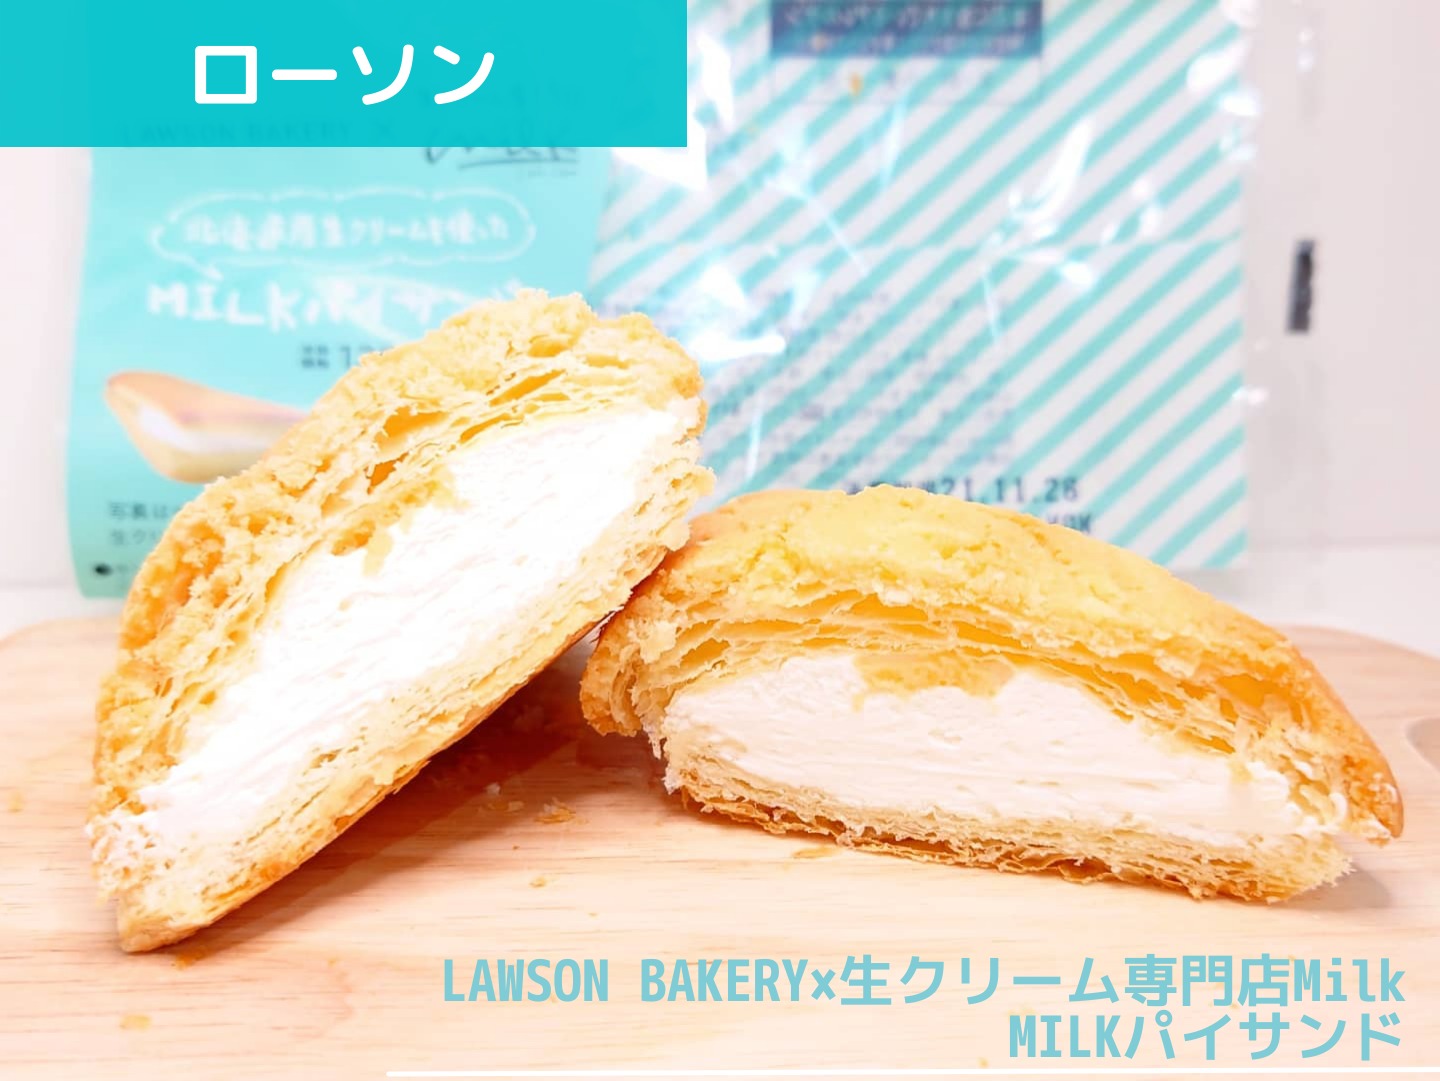 LAWSON BAKERY×生クリーム専門店Milk MILKパイサンド